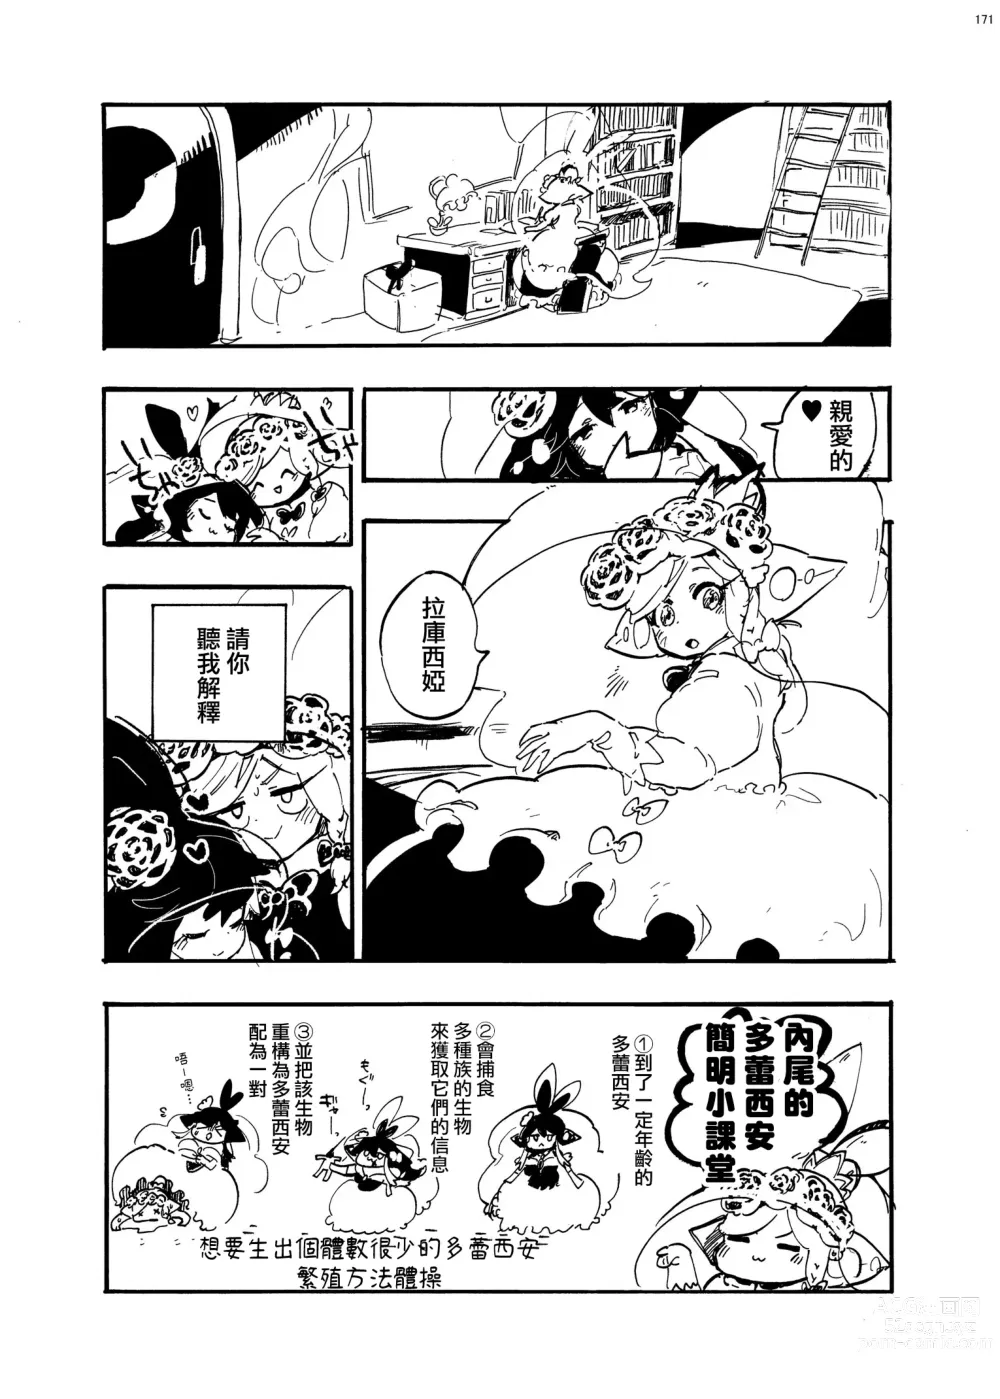 Page 14 of manga 外星人D和研究員U的遭遇